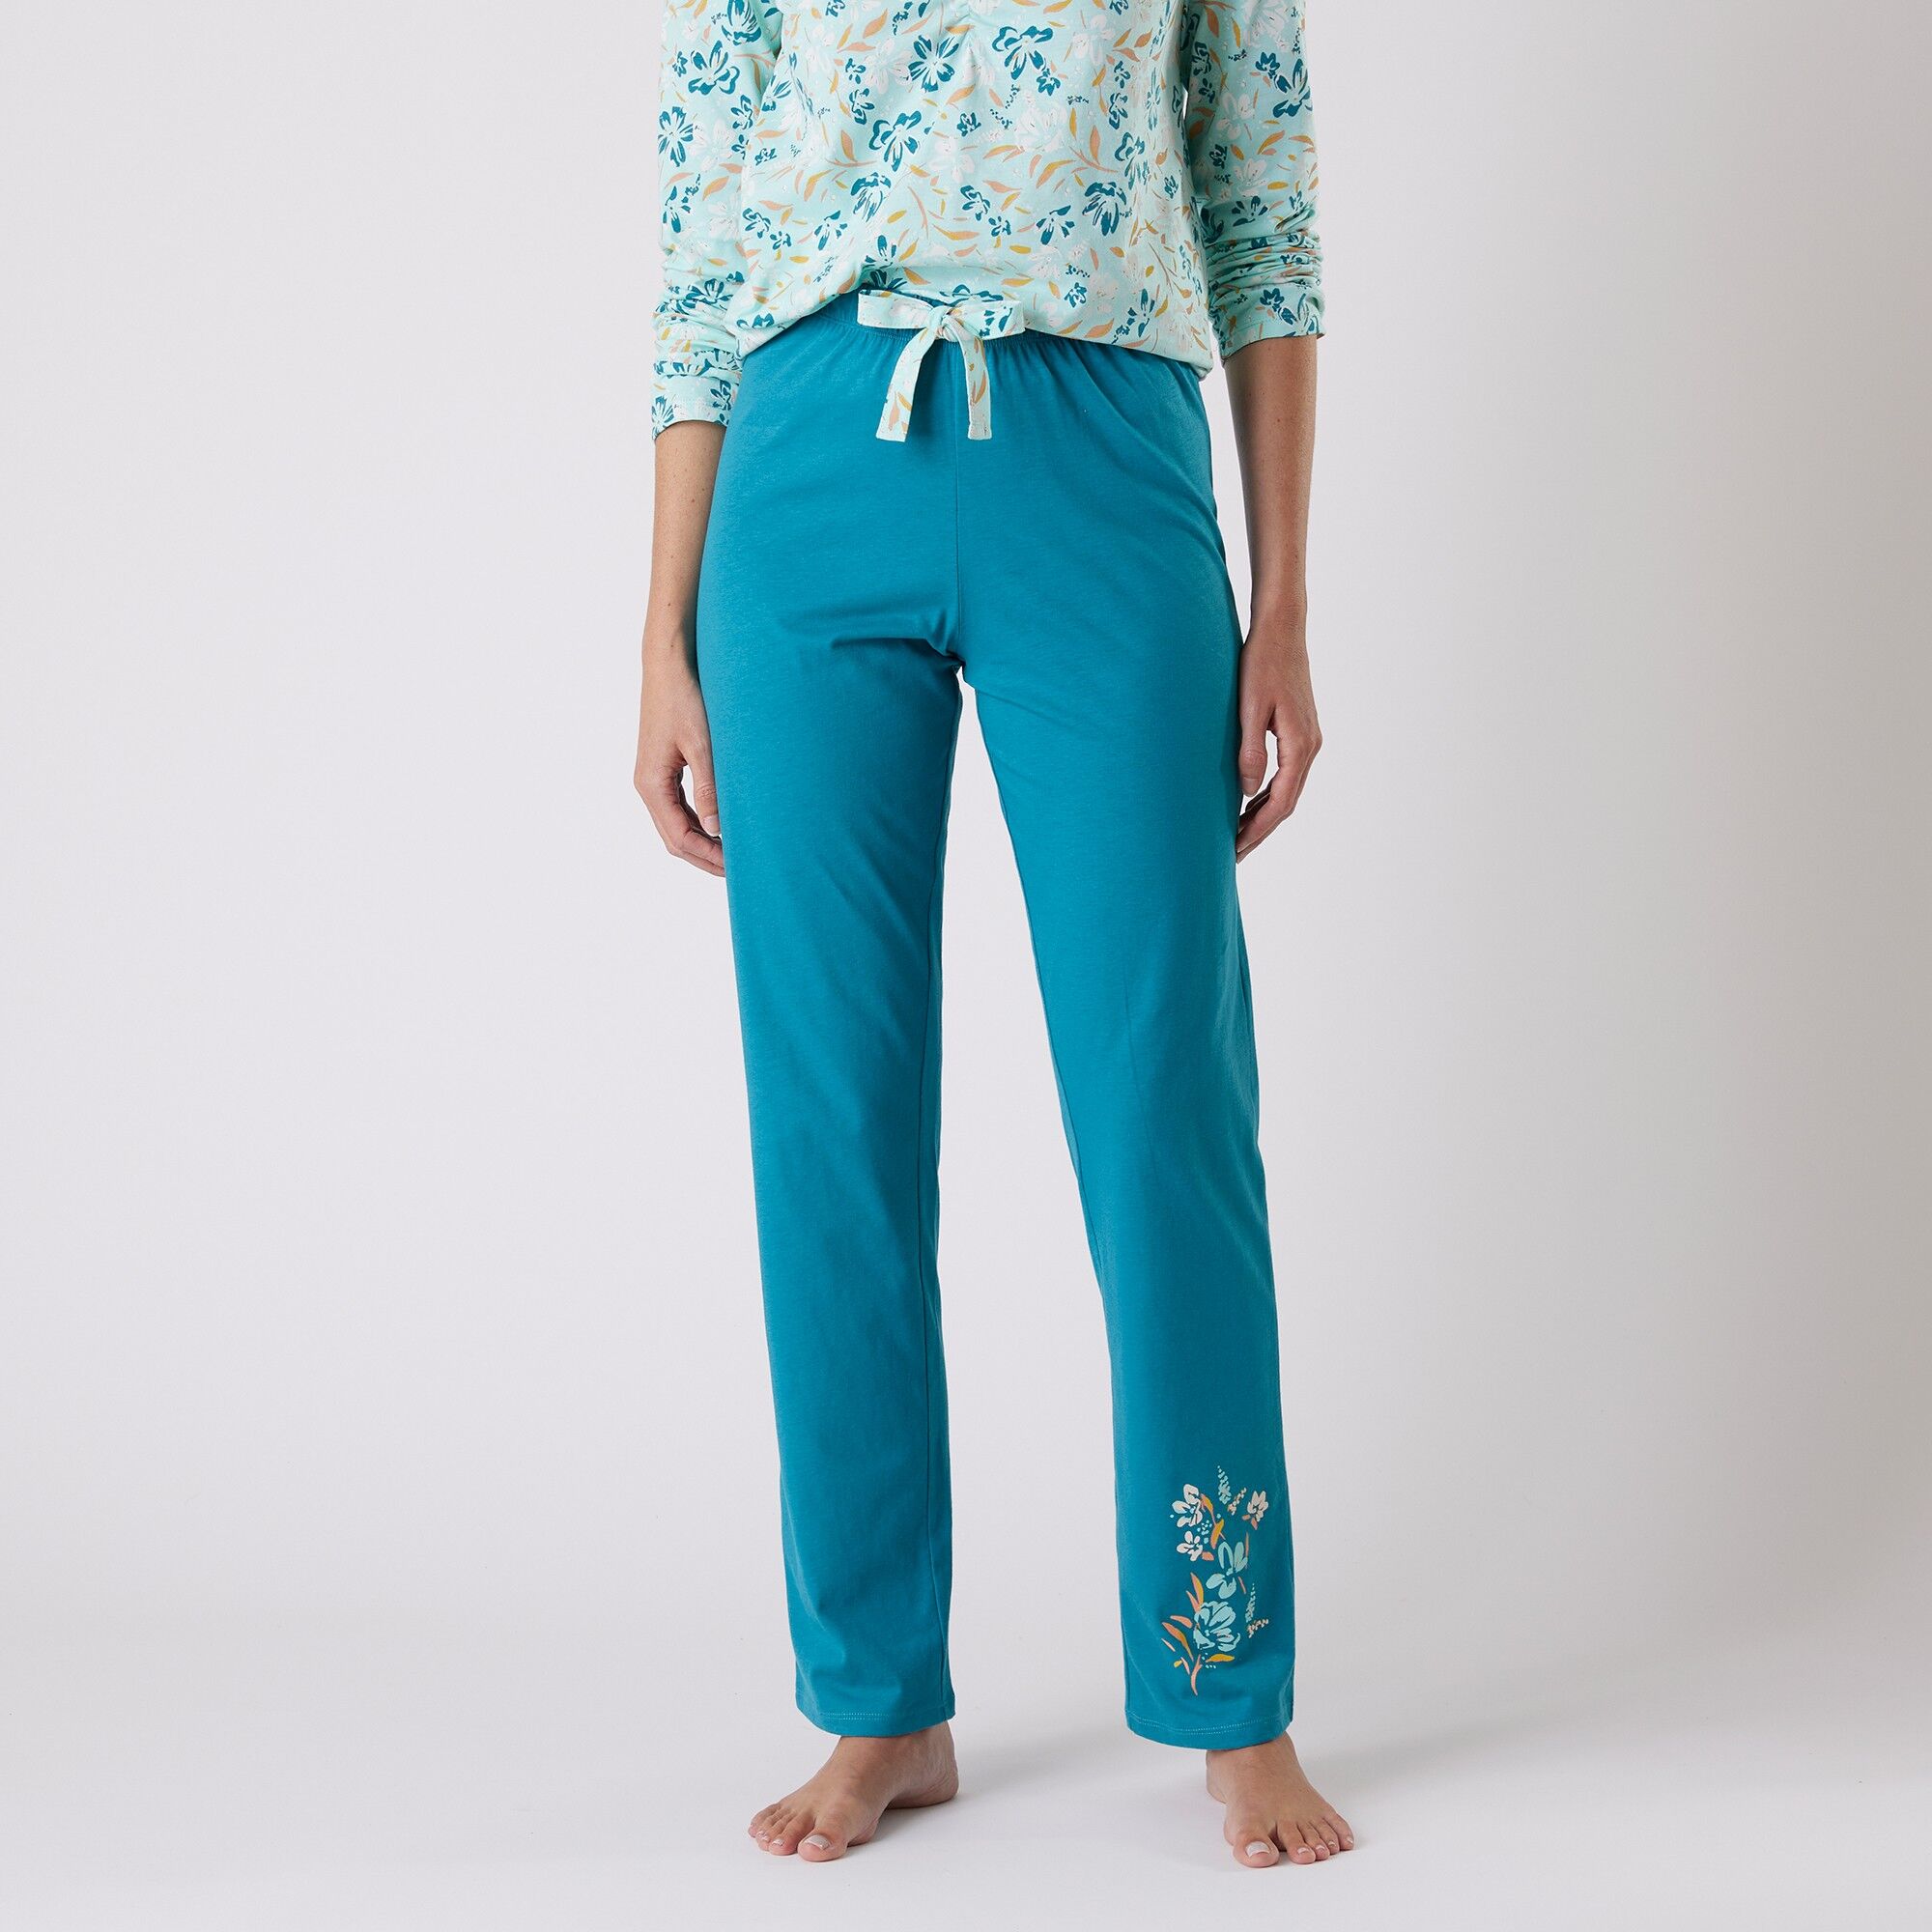 Blancheporte Pantalon pyjama coton imprimé "jardin secret" - BlancheporteLaissez-vous inspirer par cet imprimé exclusif floral pour se mettre au vert. Vous aimerez ce pantalon très confortable à associer comme vous le souhaitez au tee-shirt assorti .38/40Vert